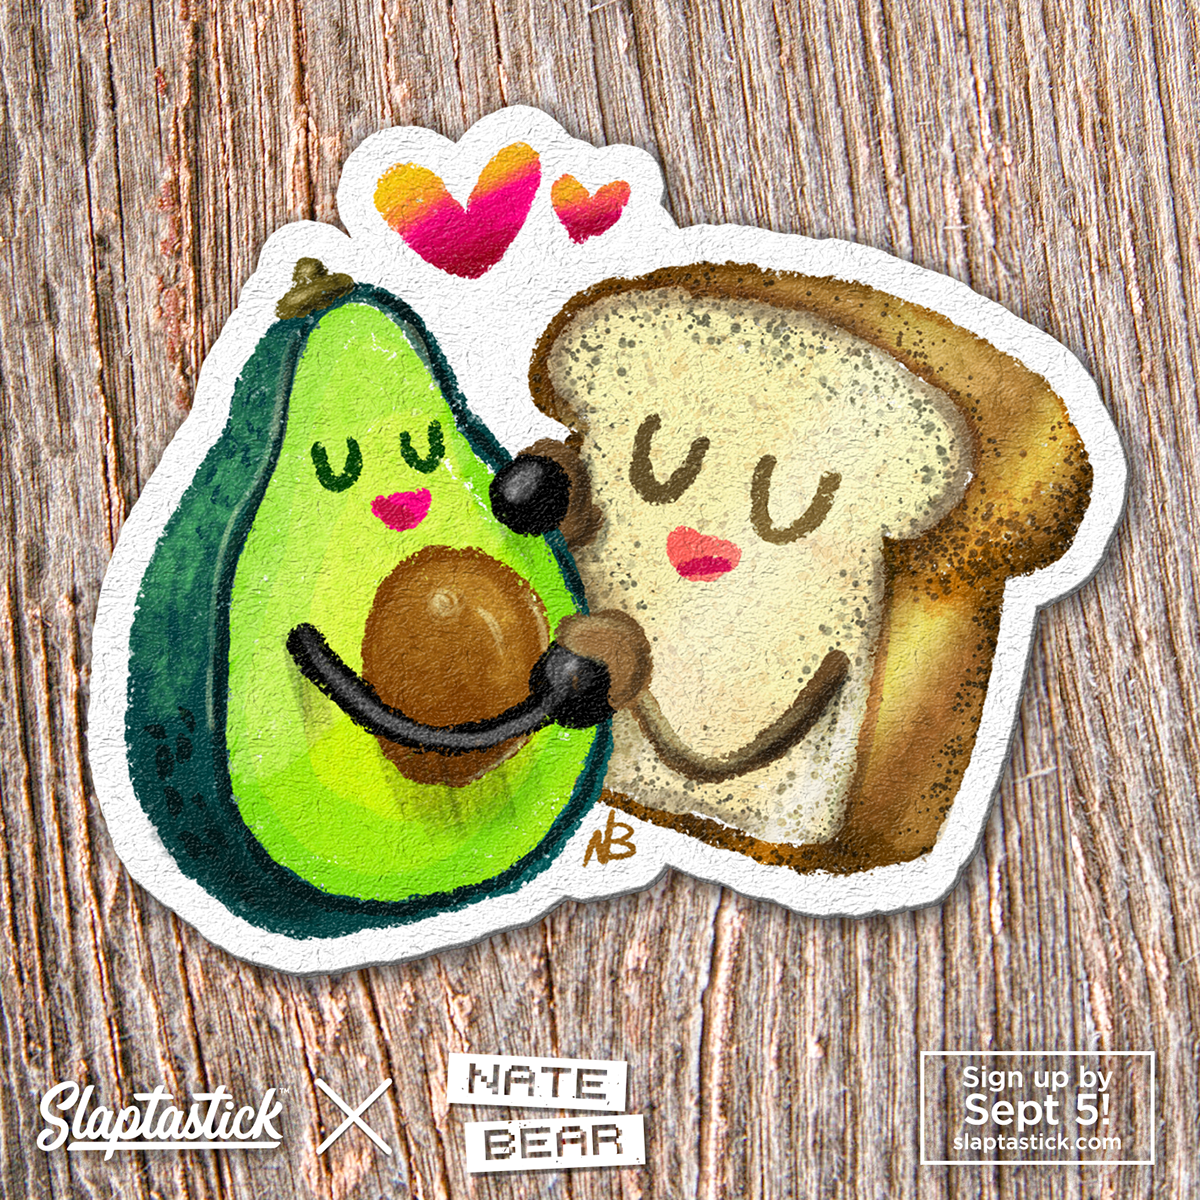 Adobe Portfolio foodie Food  stickers Cartooning  Donuts avocado Coffee snacks Slaptastick